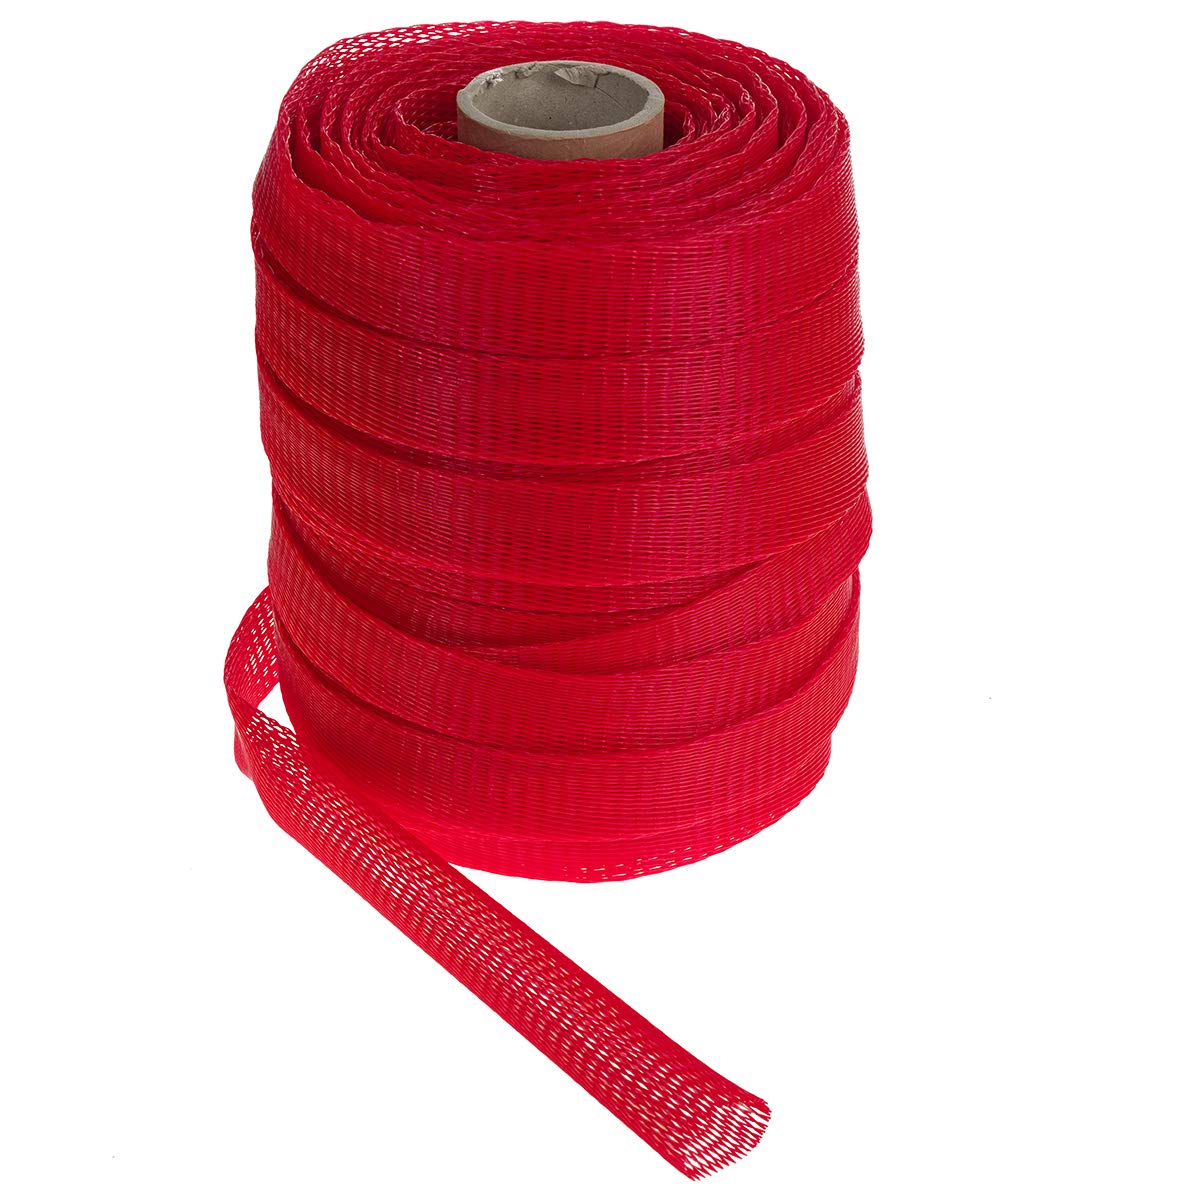 HaGa® 100 m Verpackungsnetz Netzschlauch Schutznetz Ø 50-100 mm rot | Oberflächenschutznetz | Netzbeutel | wiederverwendbar | Meterware